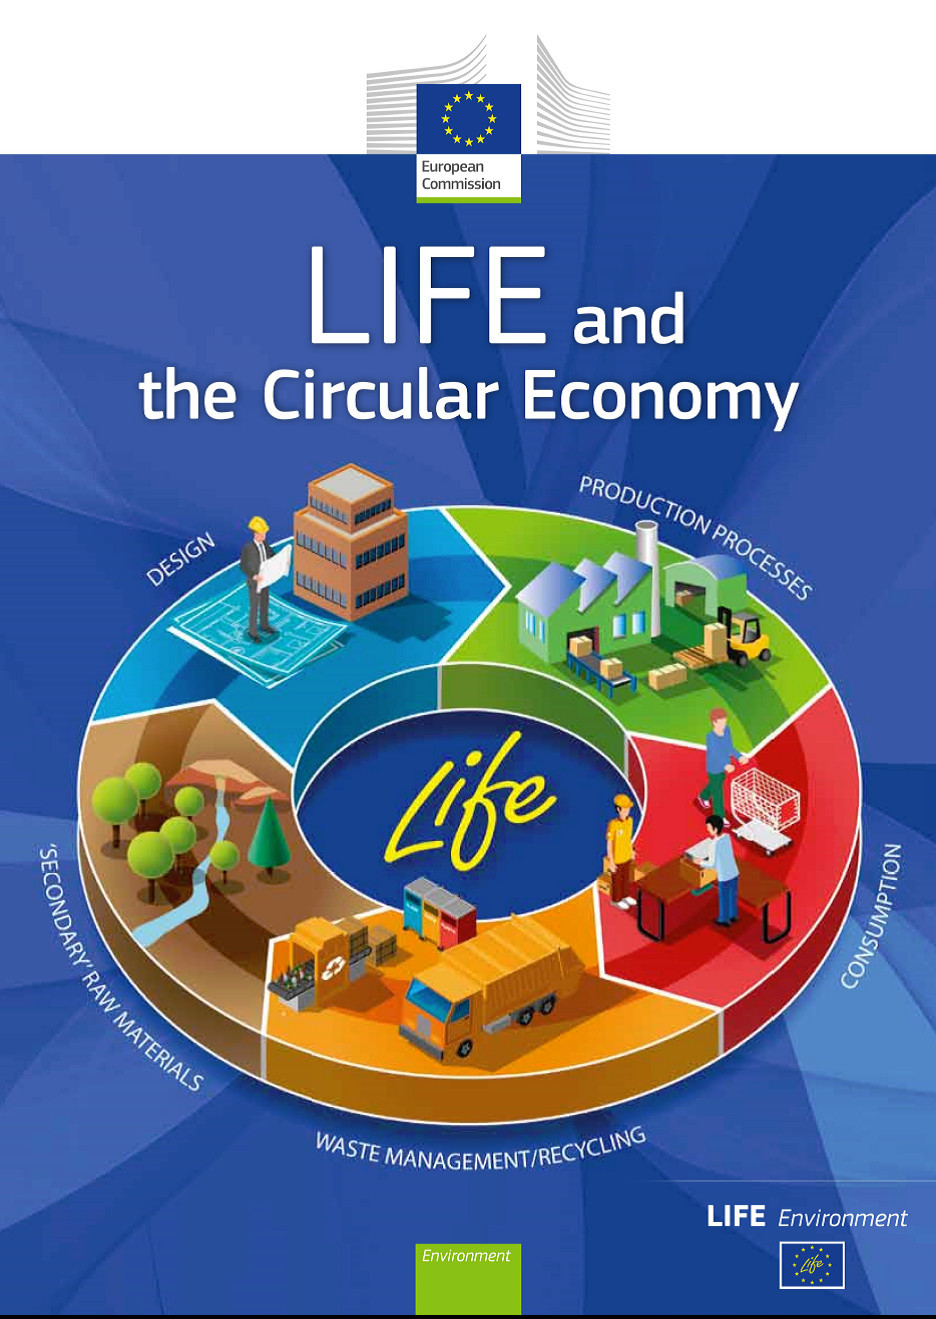 欧洲出版物《生命与循环经济》中的 "绿汇 "项目 1